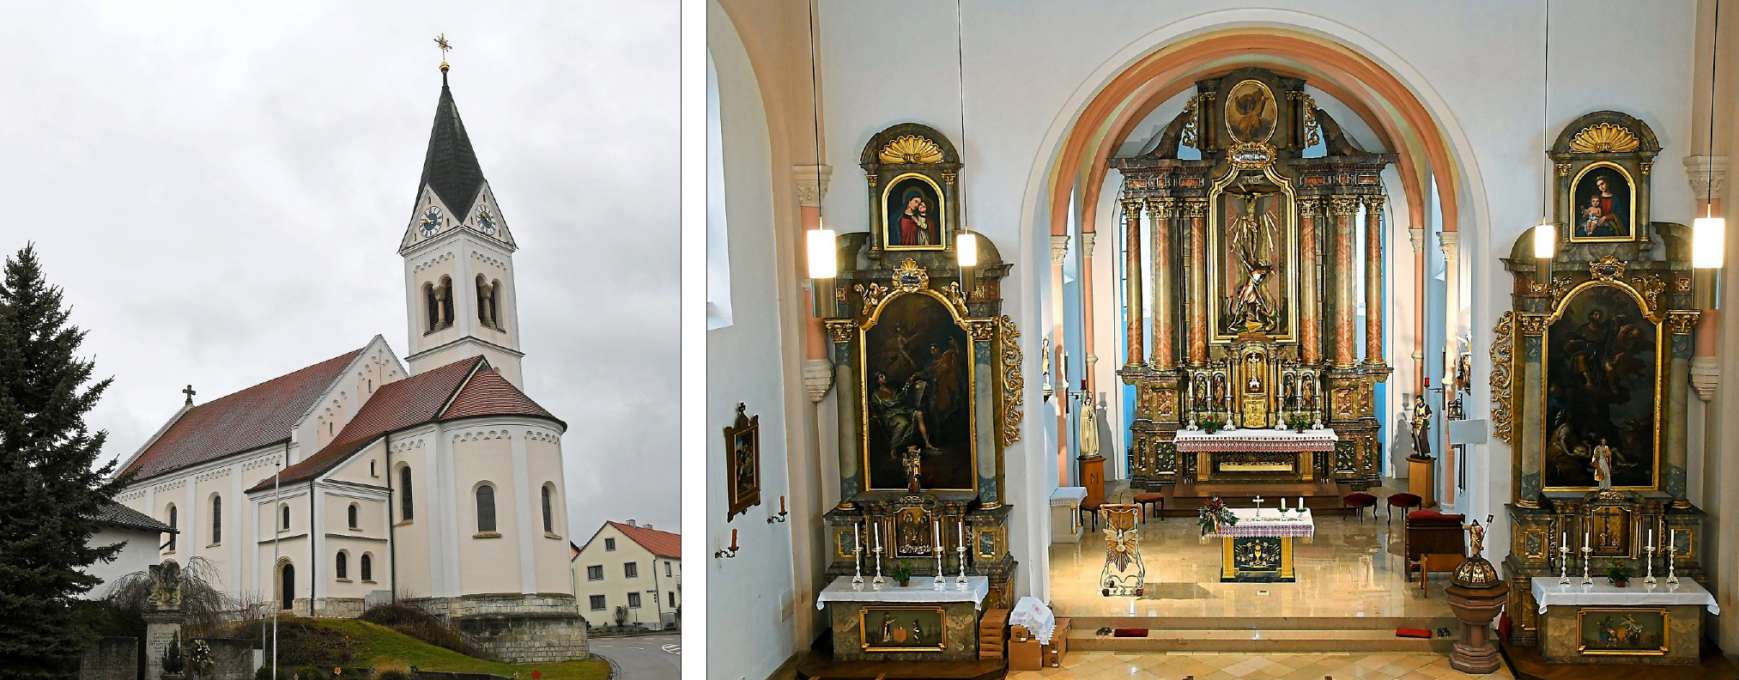 Außen wie innen ein Juwel: die Oberdollinger Pfarrkirche St. Georg, die heuer ihr 125-jähriges Bestehen feiern kann. Fotos: Vogl